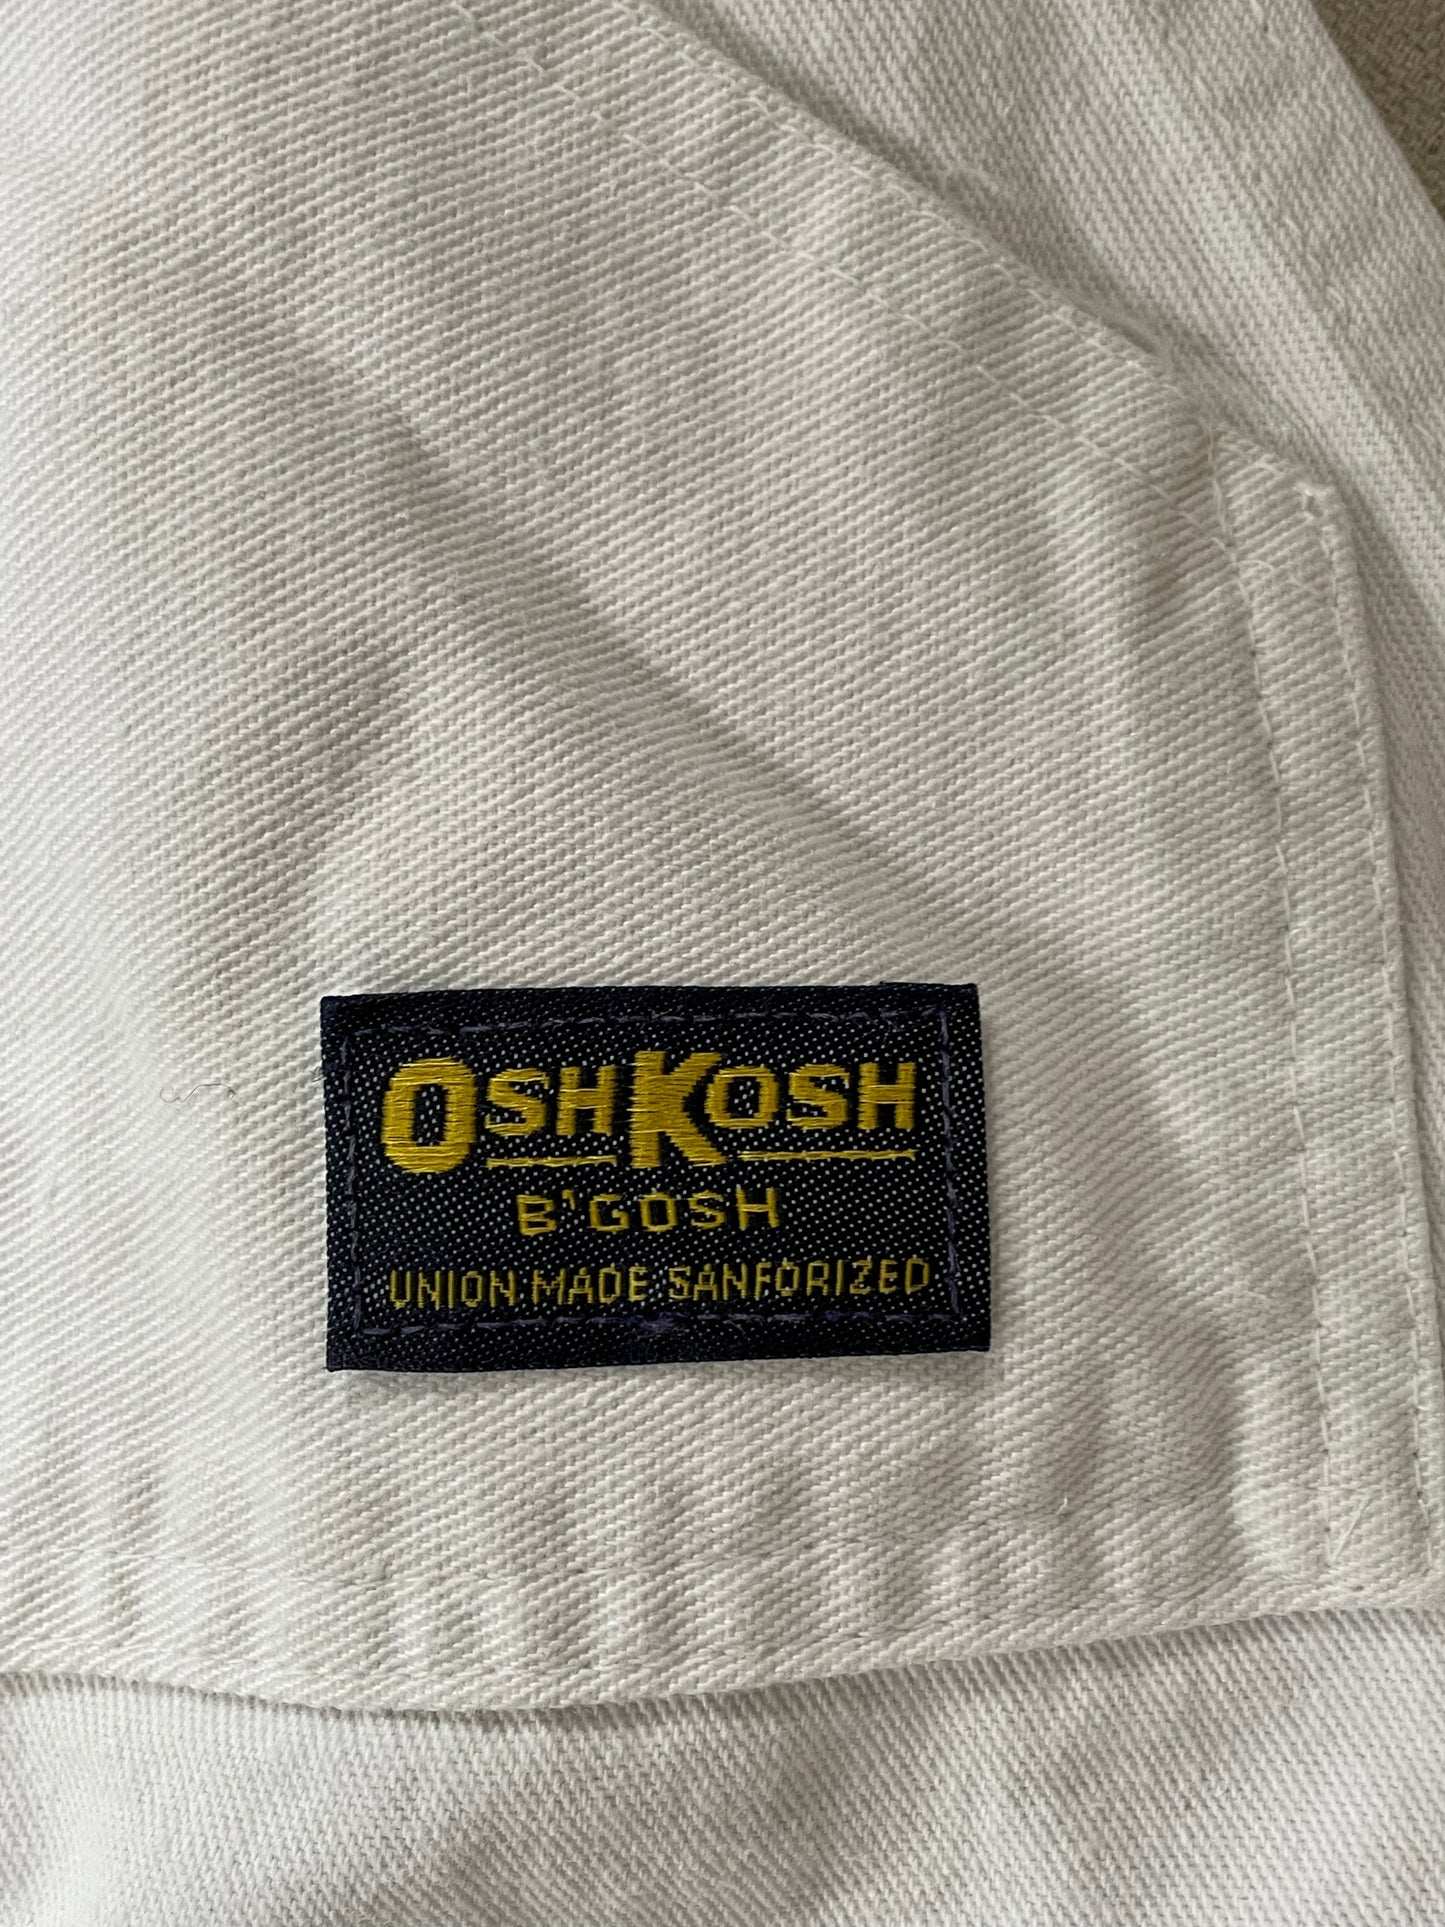 80s White OshKosh Overalls